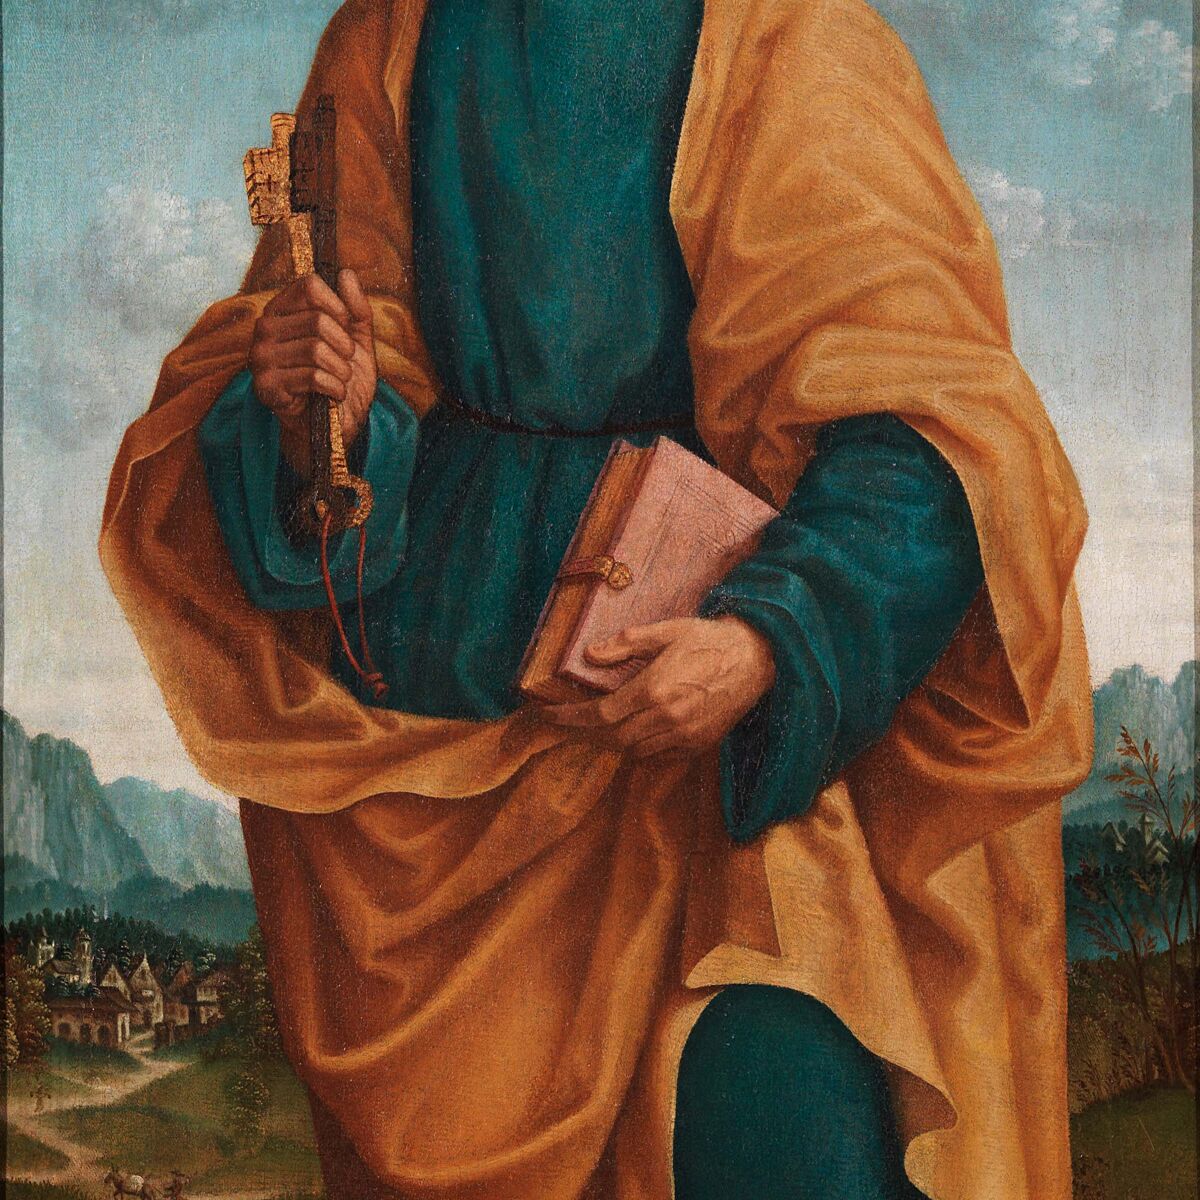 San Pietro Apostolo